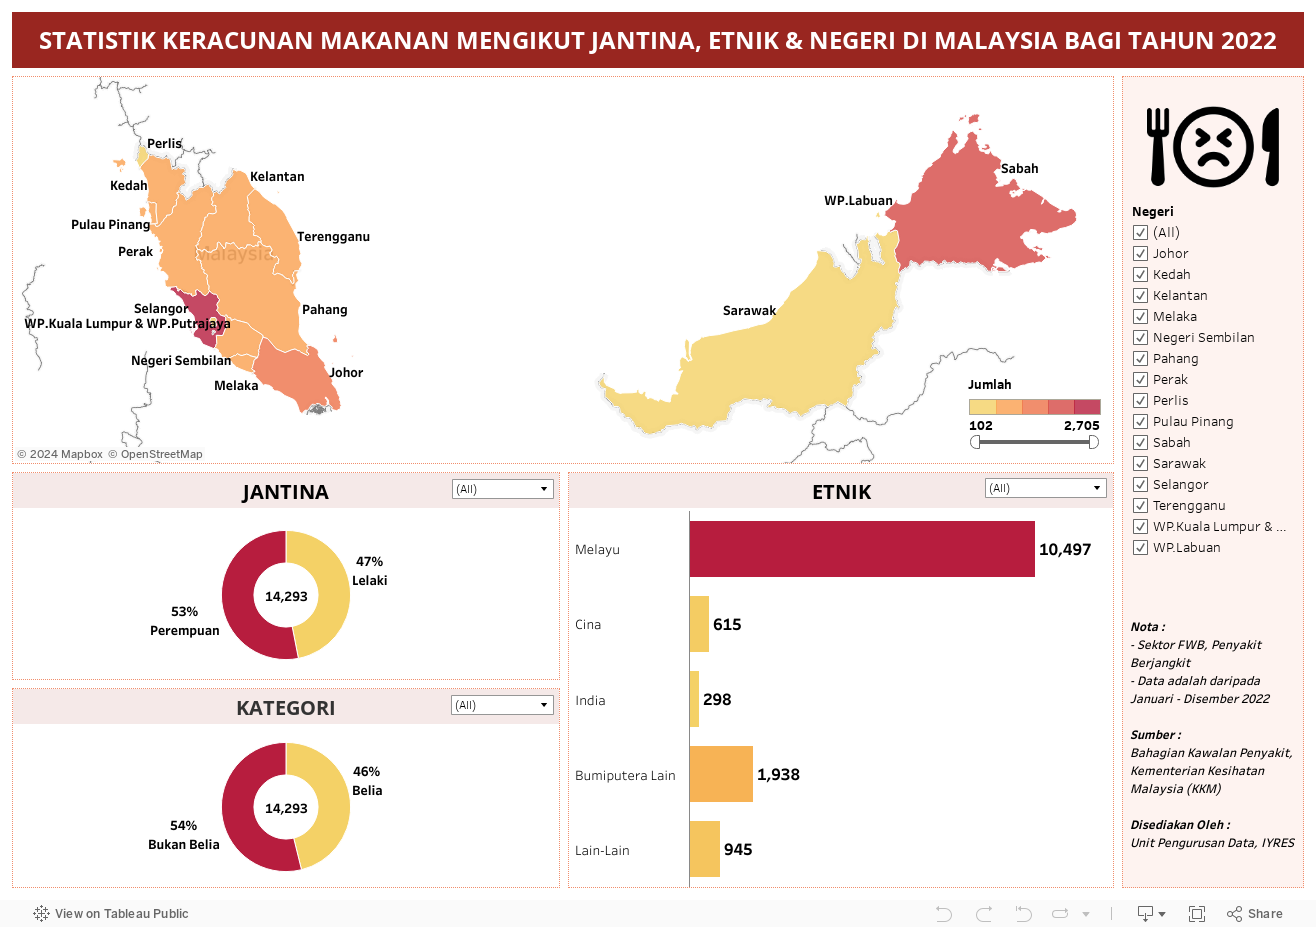 STATISTIK KERACUNAN MAKANAN MENGIKUT JANTINA, ETNIK & NEGERI DI MALAYSIA BAGI TAHUN 2022 